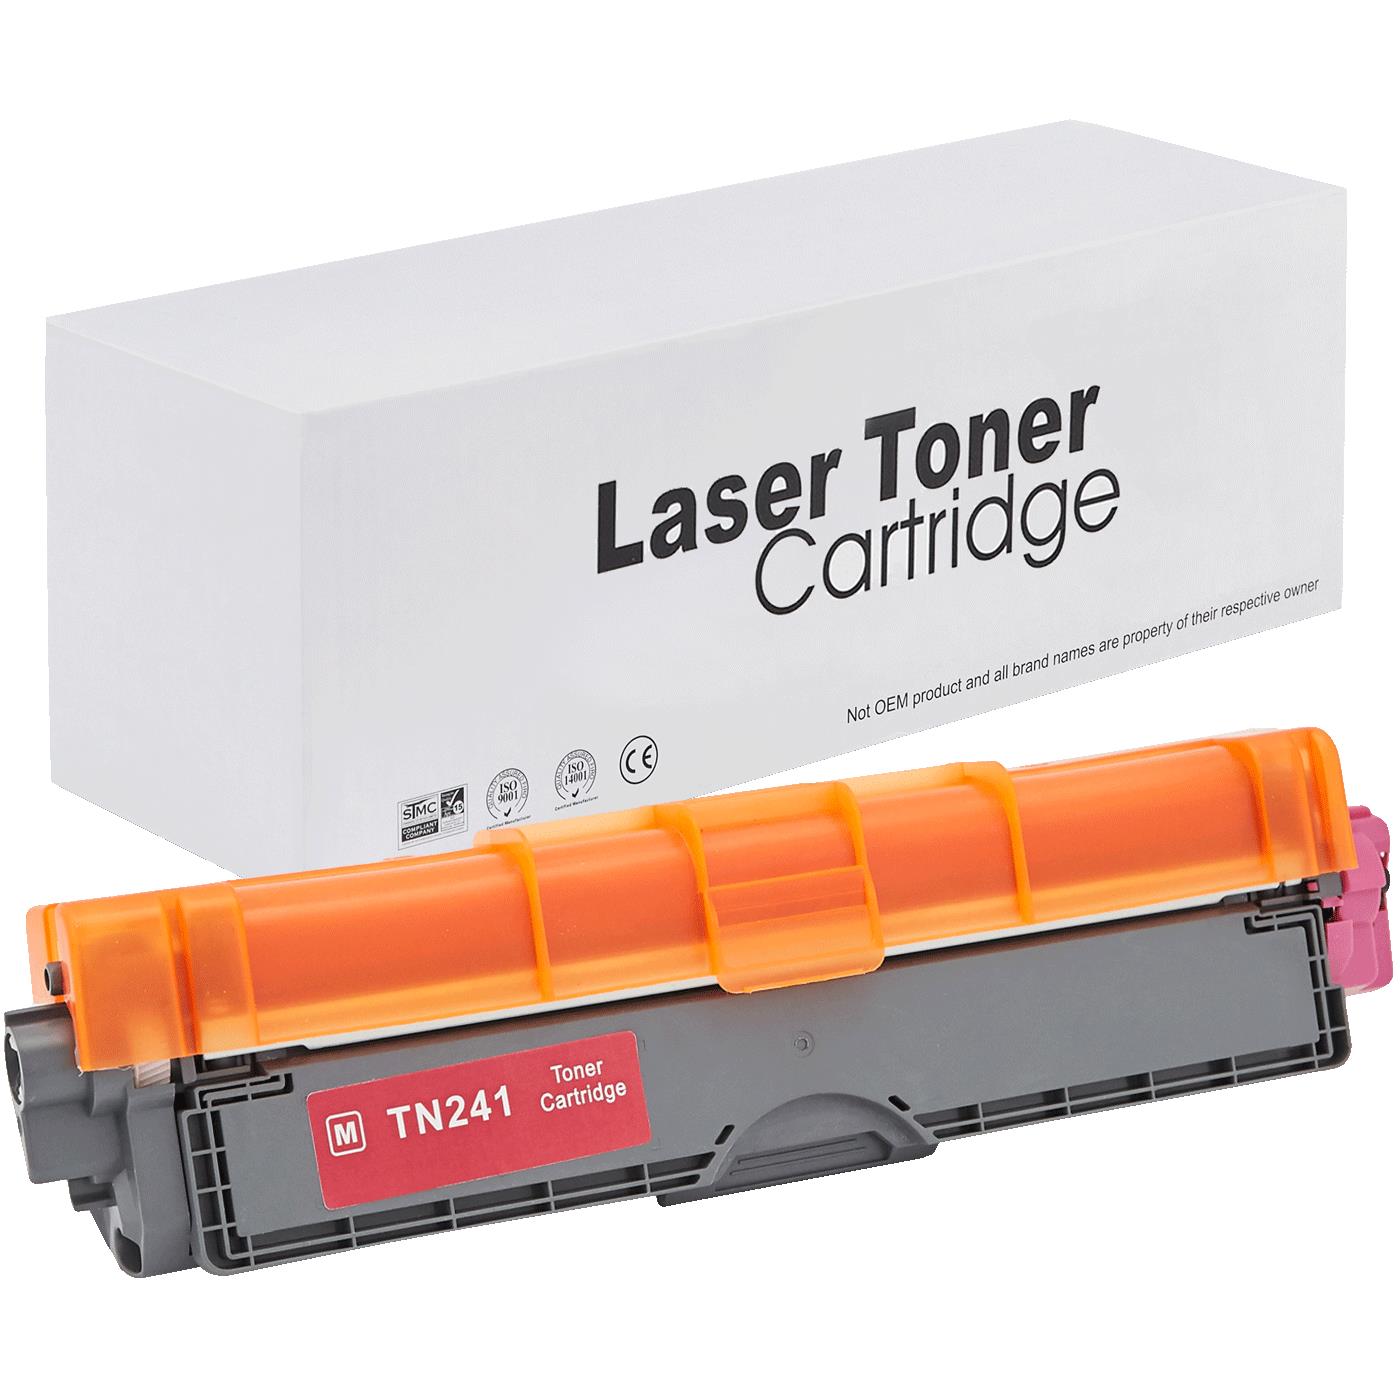 съвместима тонер касета за принтери и печатащи устройства на Brother HL-3150 CDN Toner BR-241M | TN241M. Ниски цени, прецизно изпълнение, високо качество.